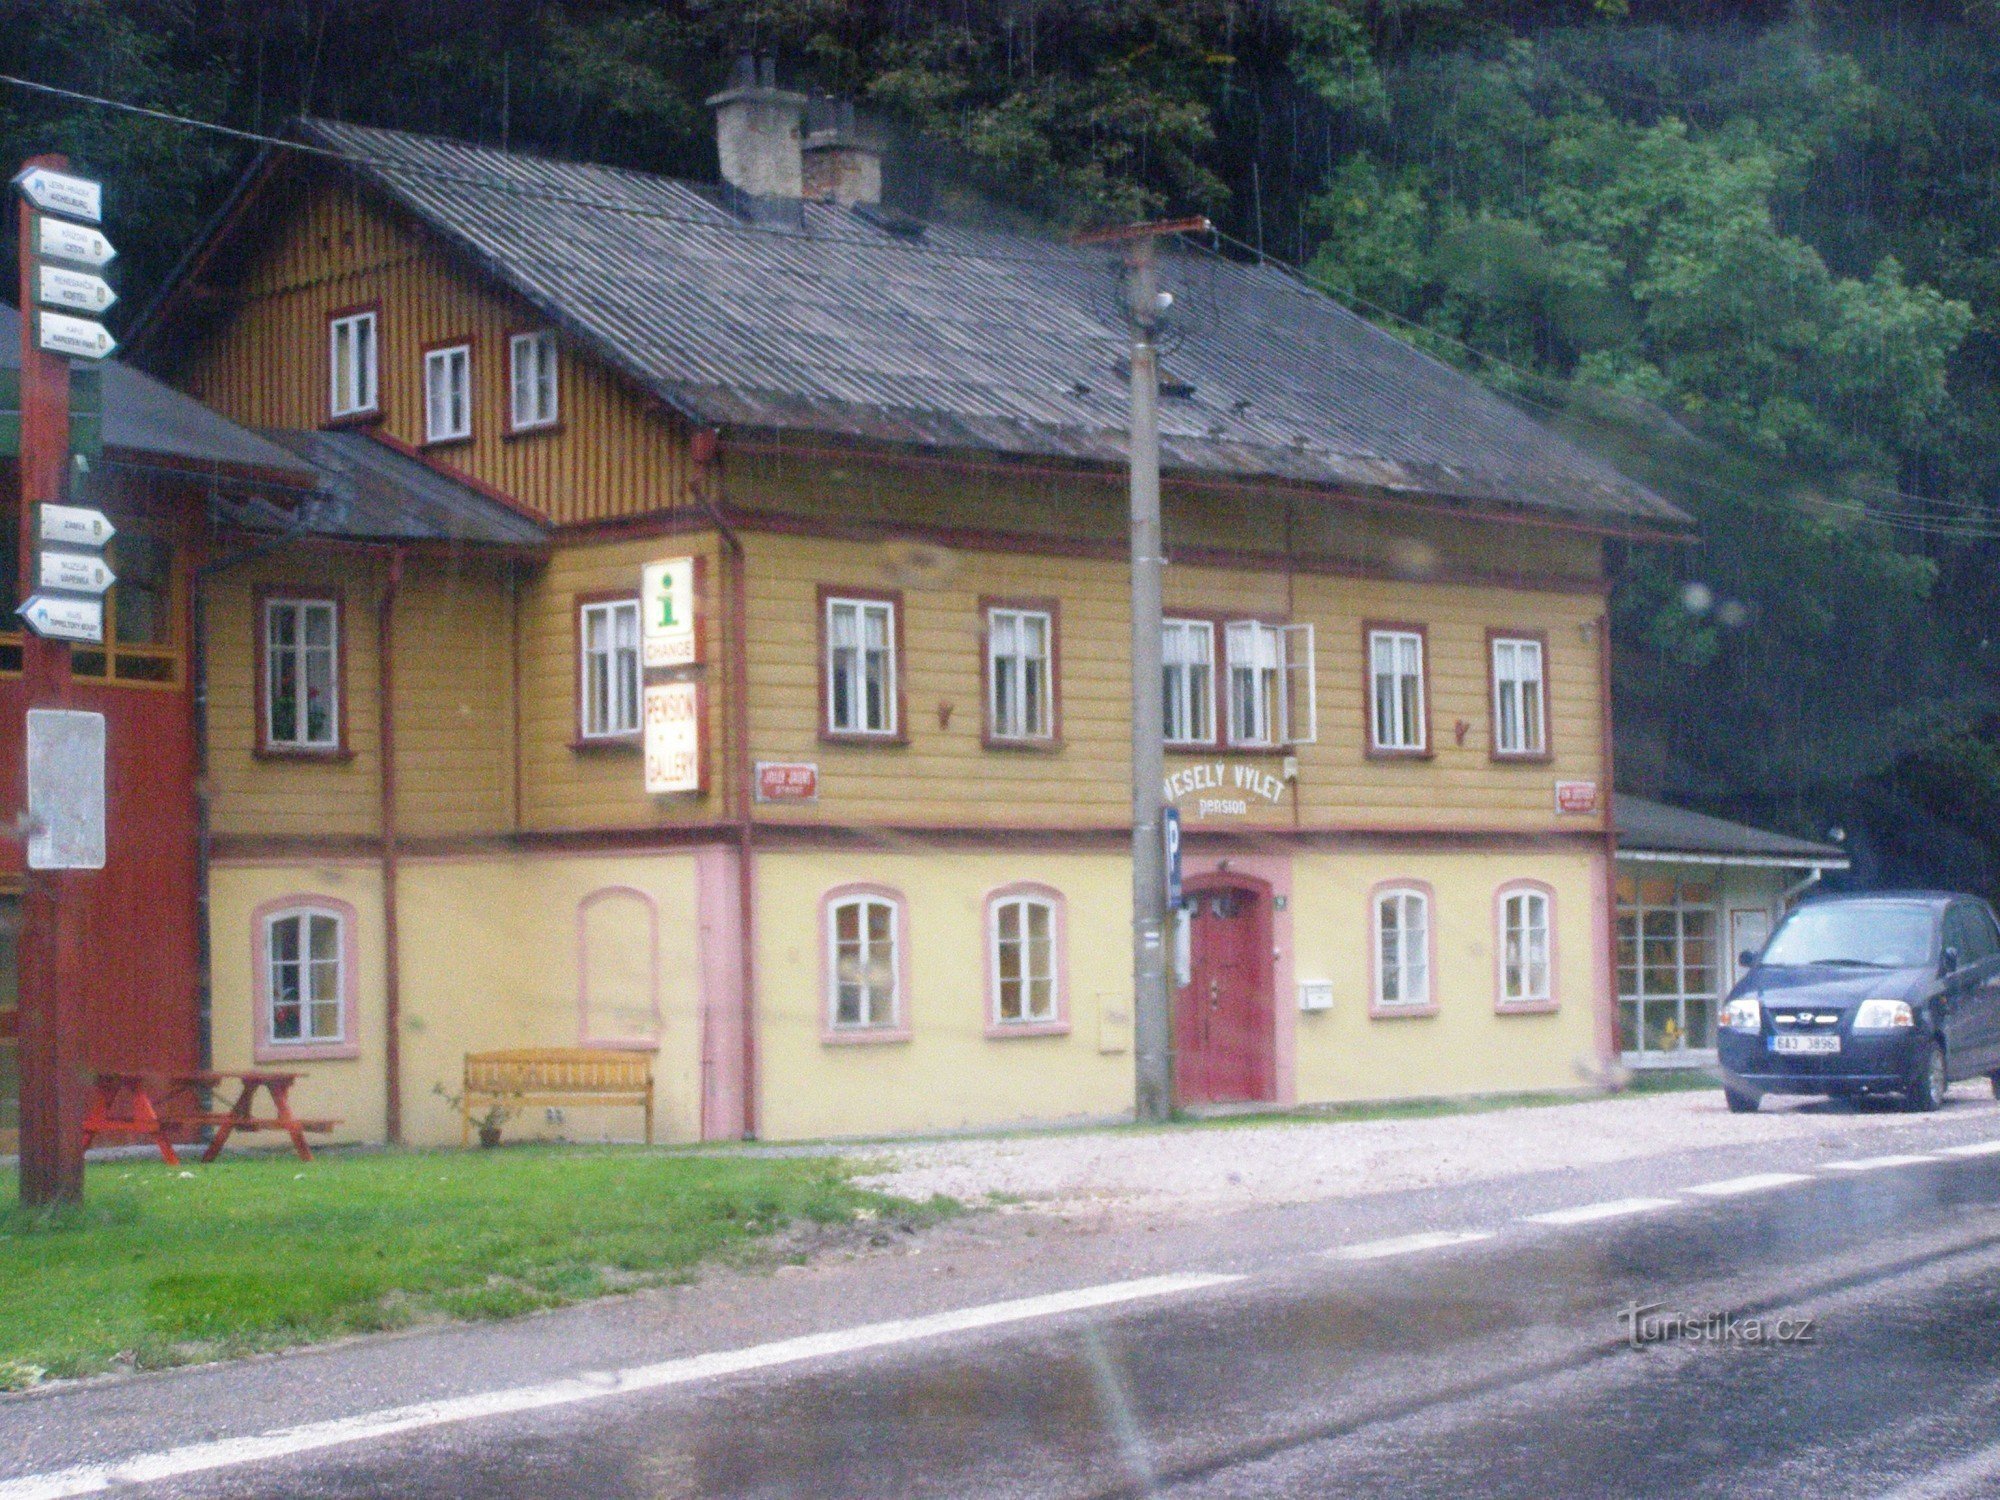 Horní Maršov - informationscenter Trevlig resa